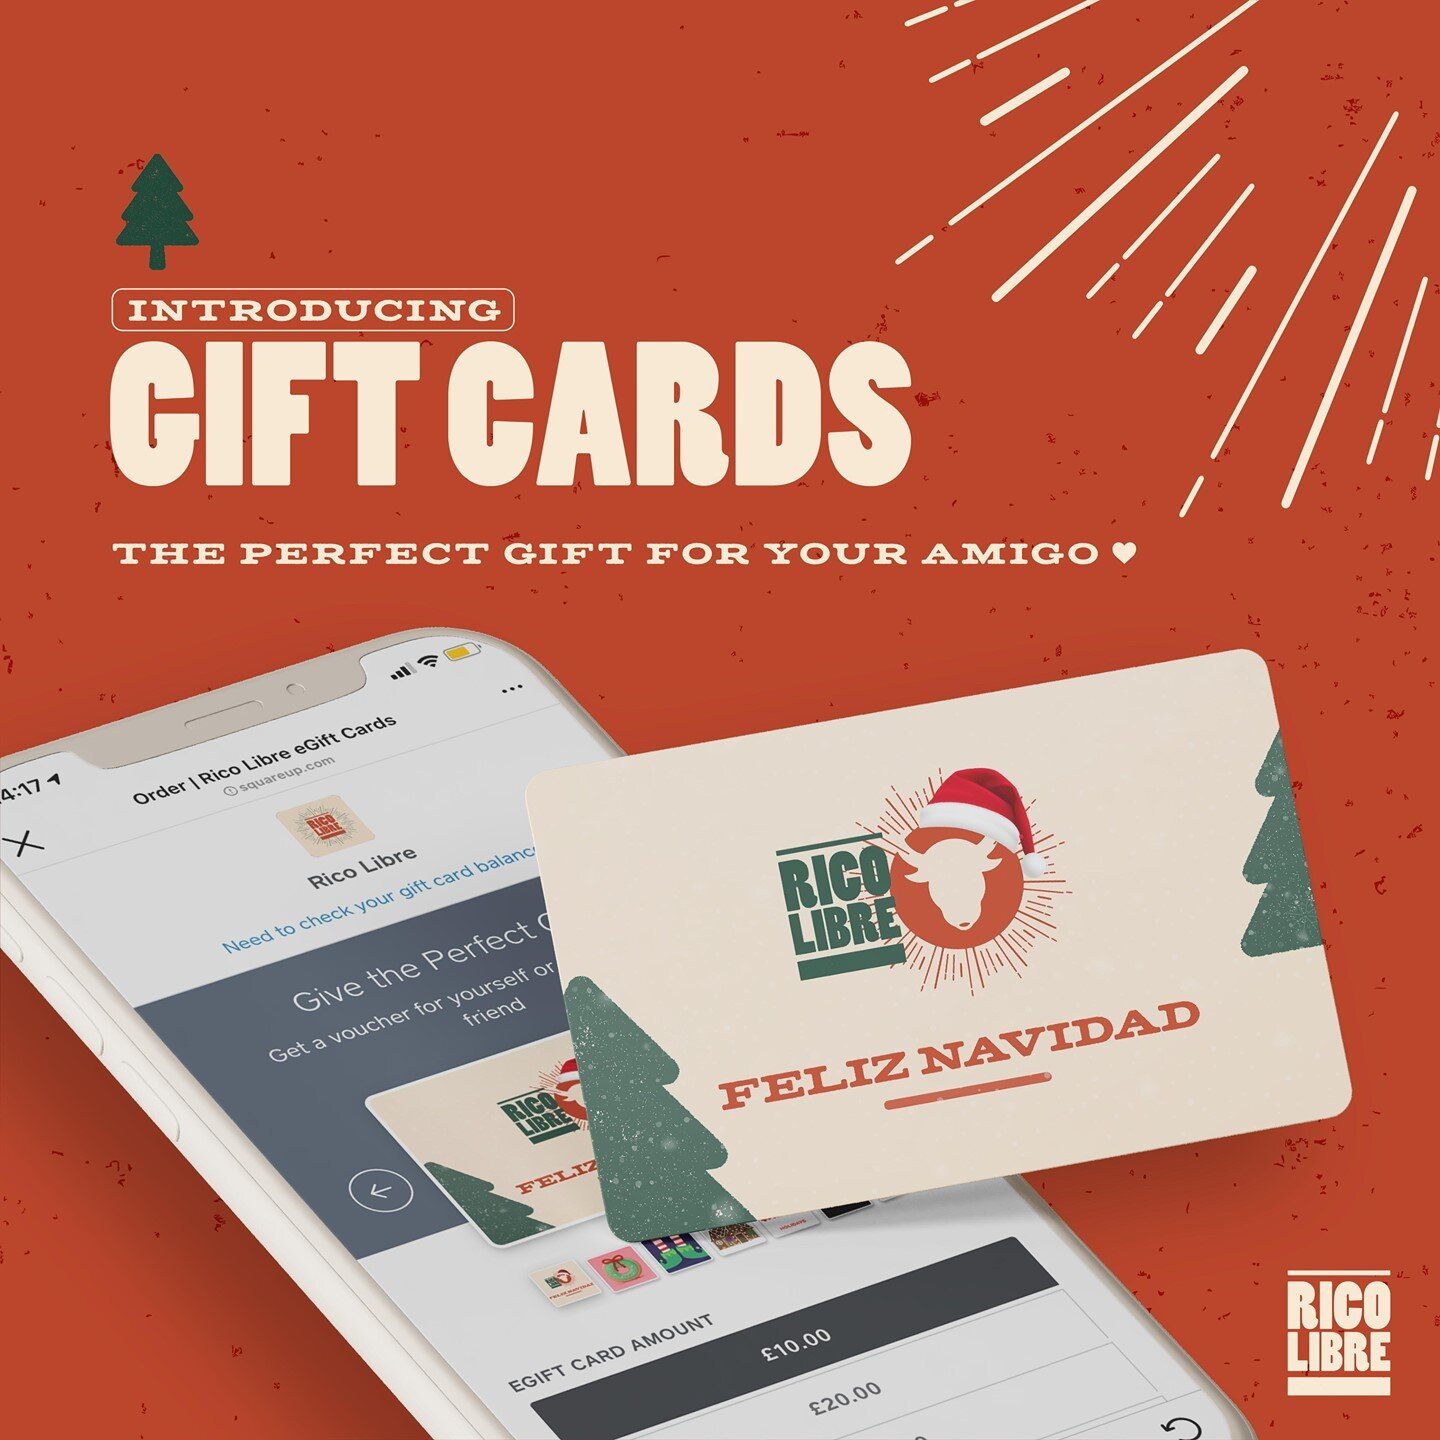 Say 'Feliz Navidad' to your amigo with a Rico Libre Gift Card &mdash; now available via the button in our bio! 🎄